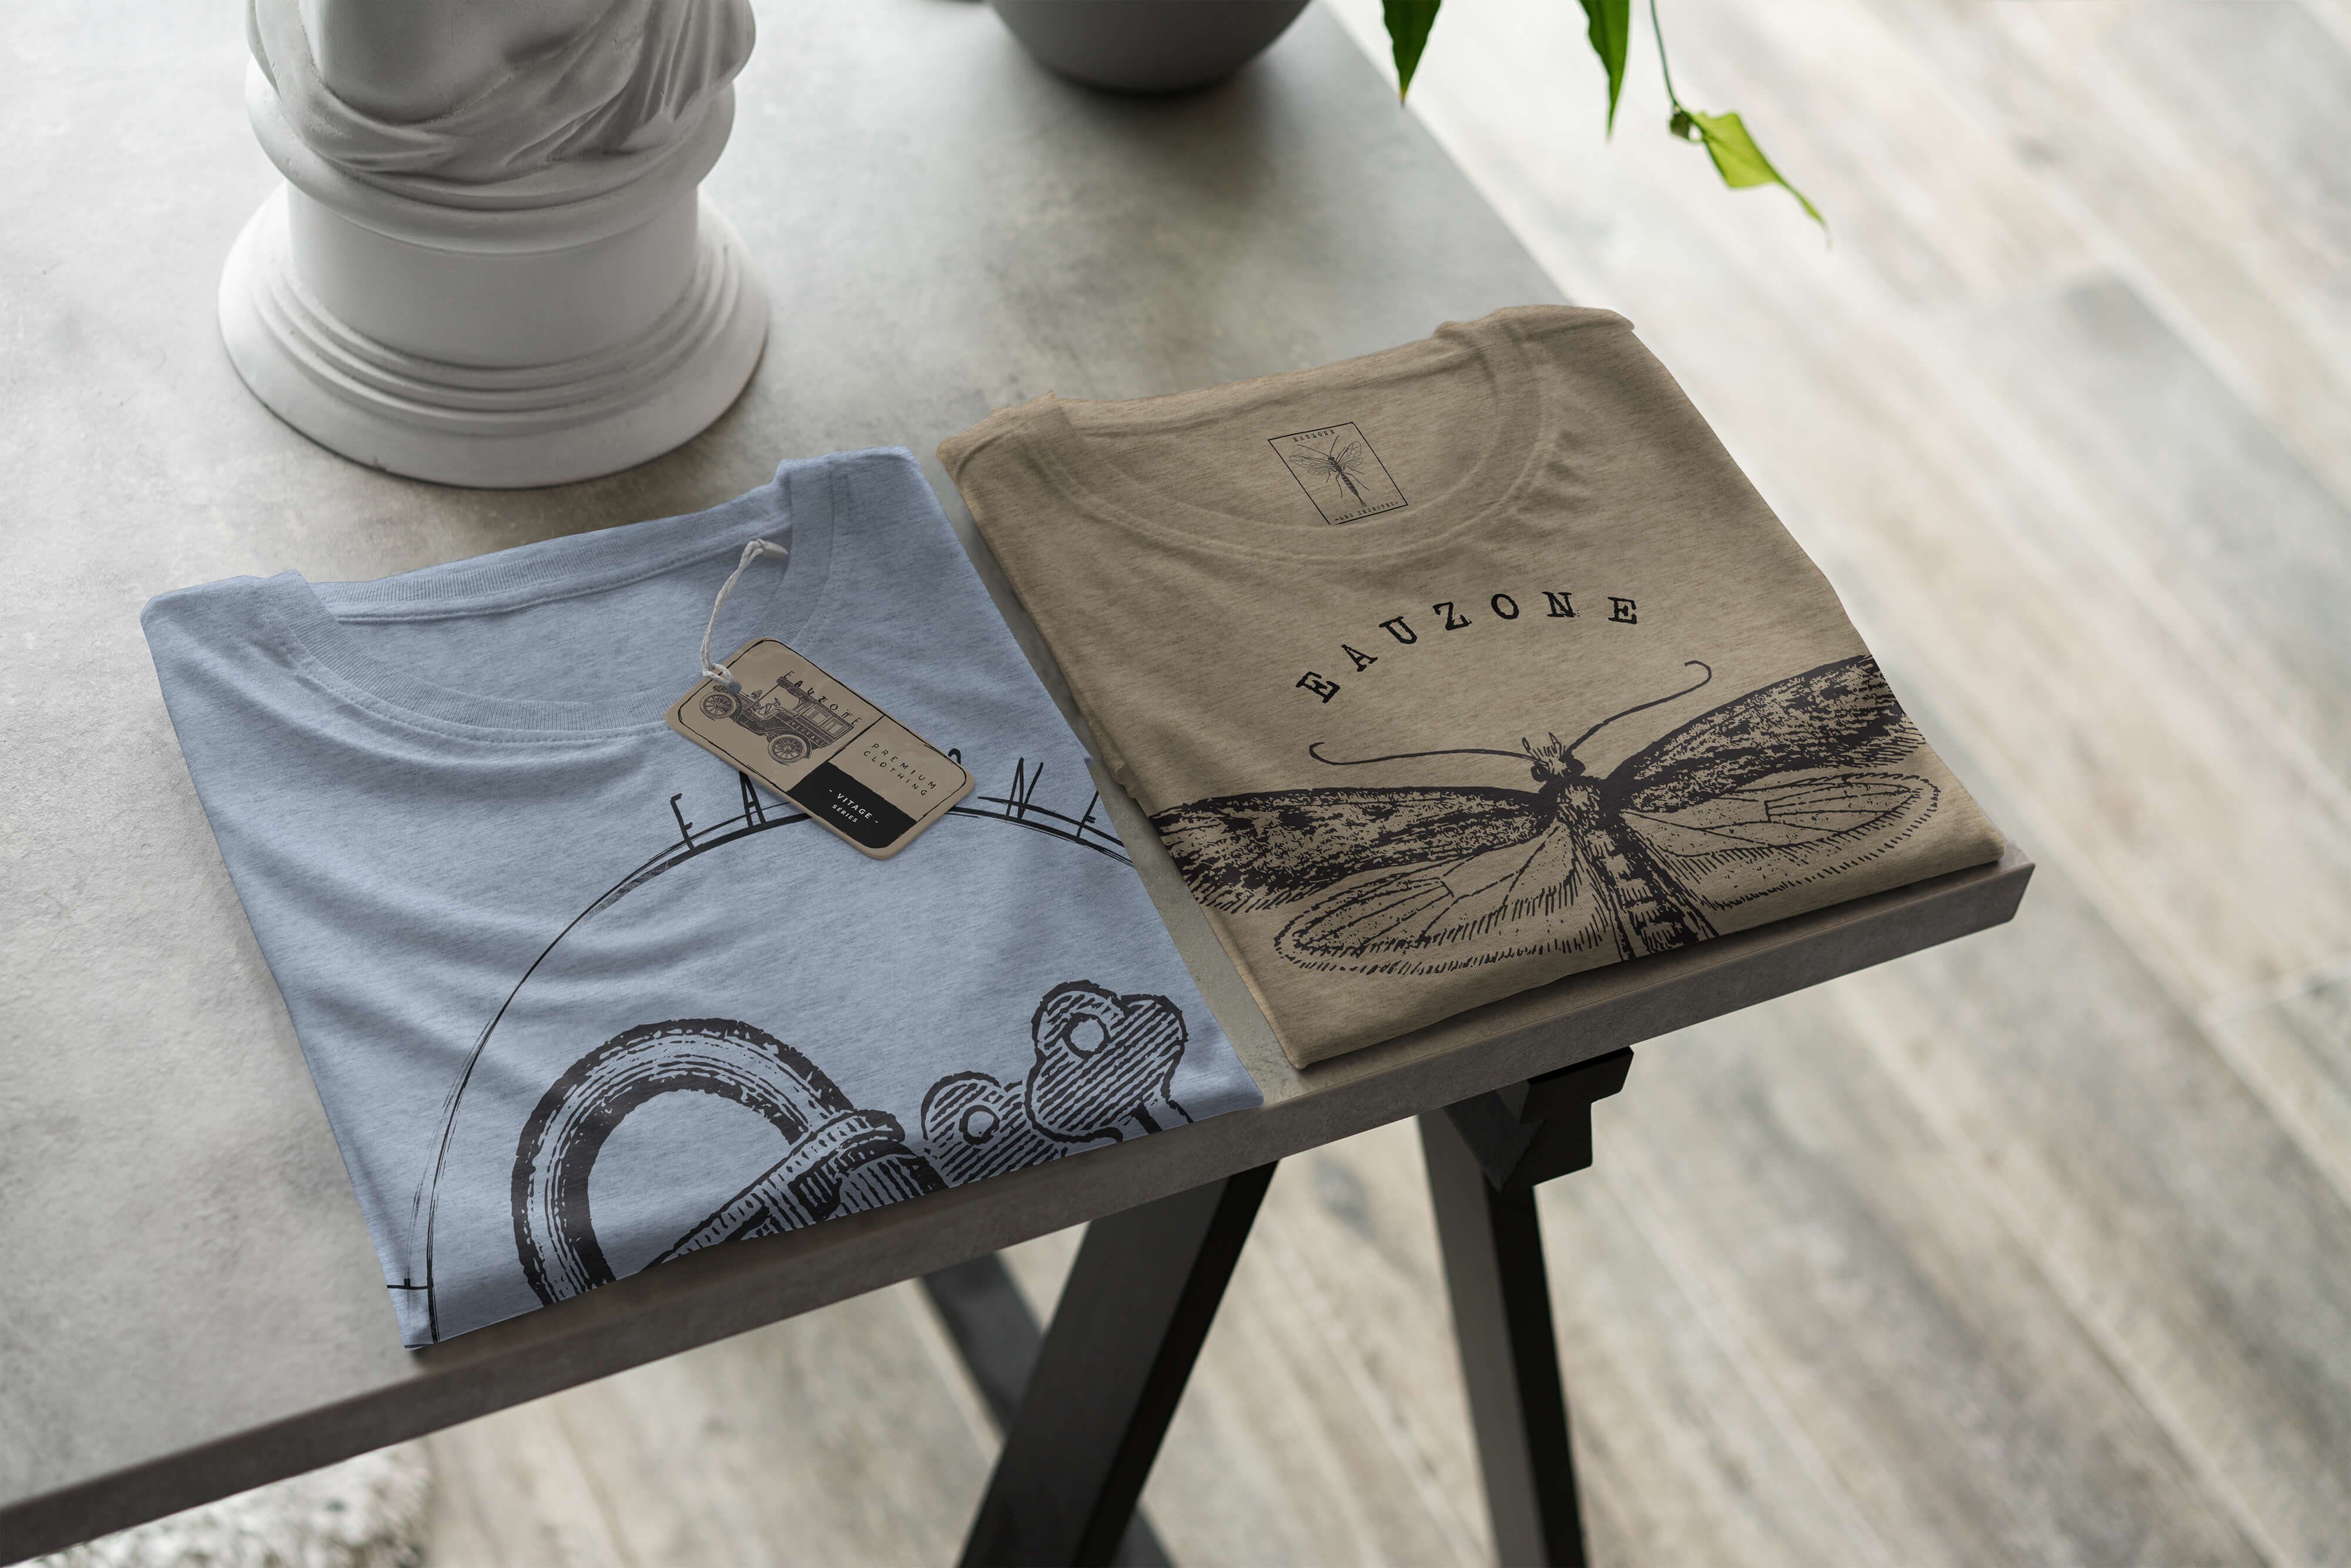 Sinus Herren Vintage Art T-Shirt Stonewash Denim T-Shirt Schloss